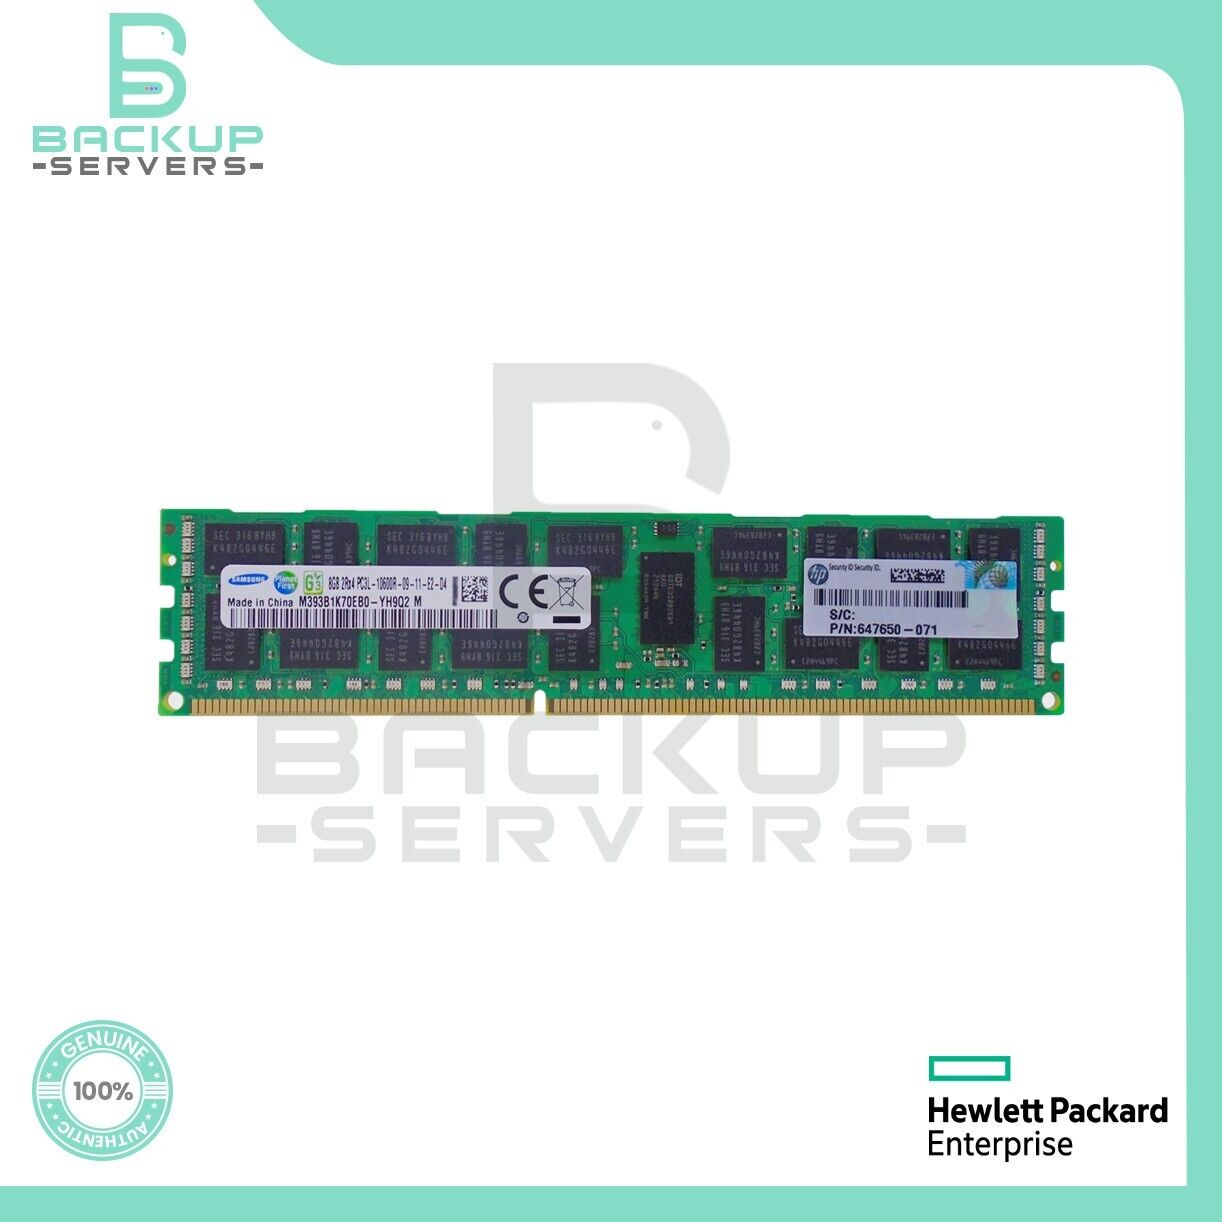 HP 8GB 2Rx4 647897-B21 1333MHz PC3-10600 CL9 240-Pin ECC Reg Memory 647650-071